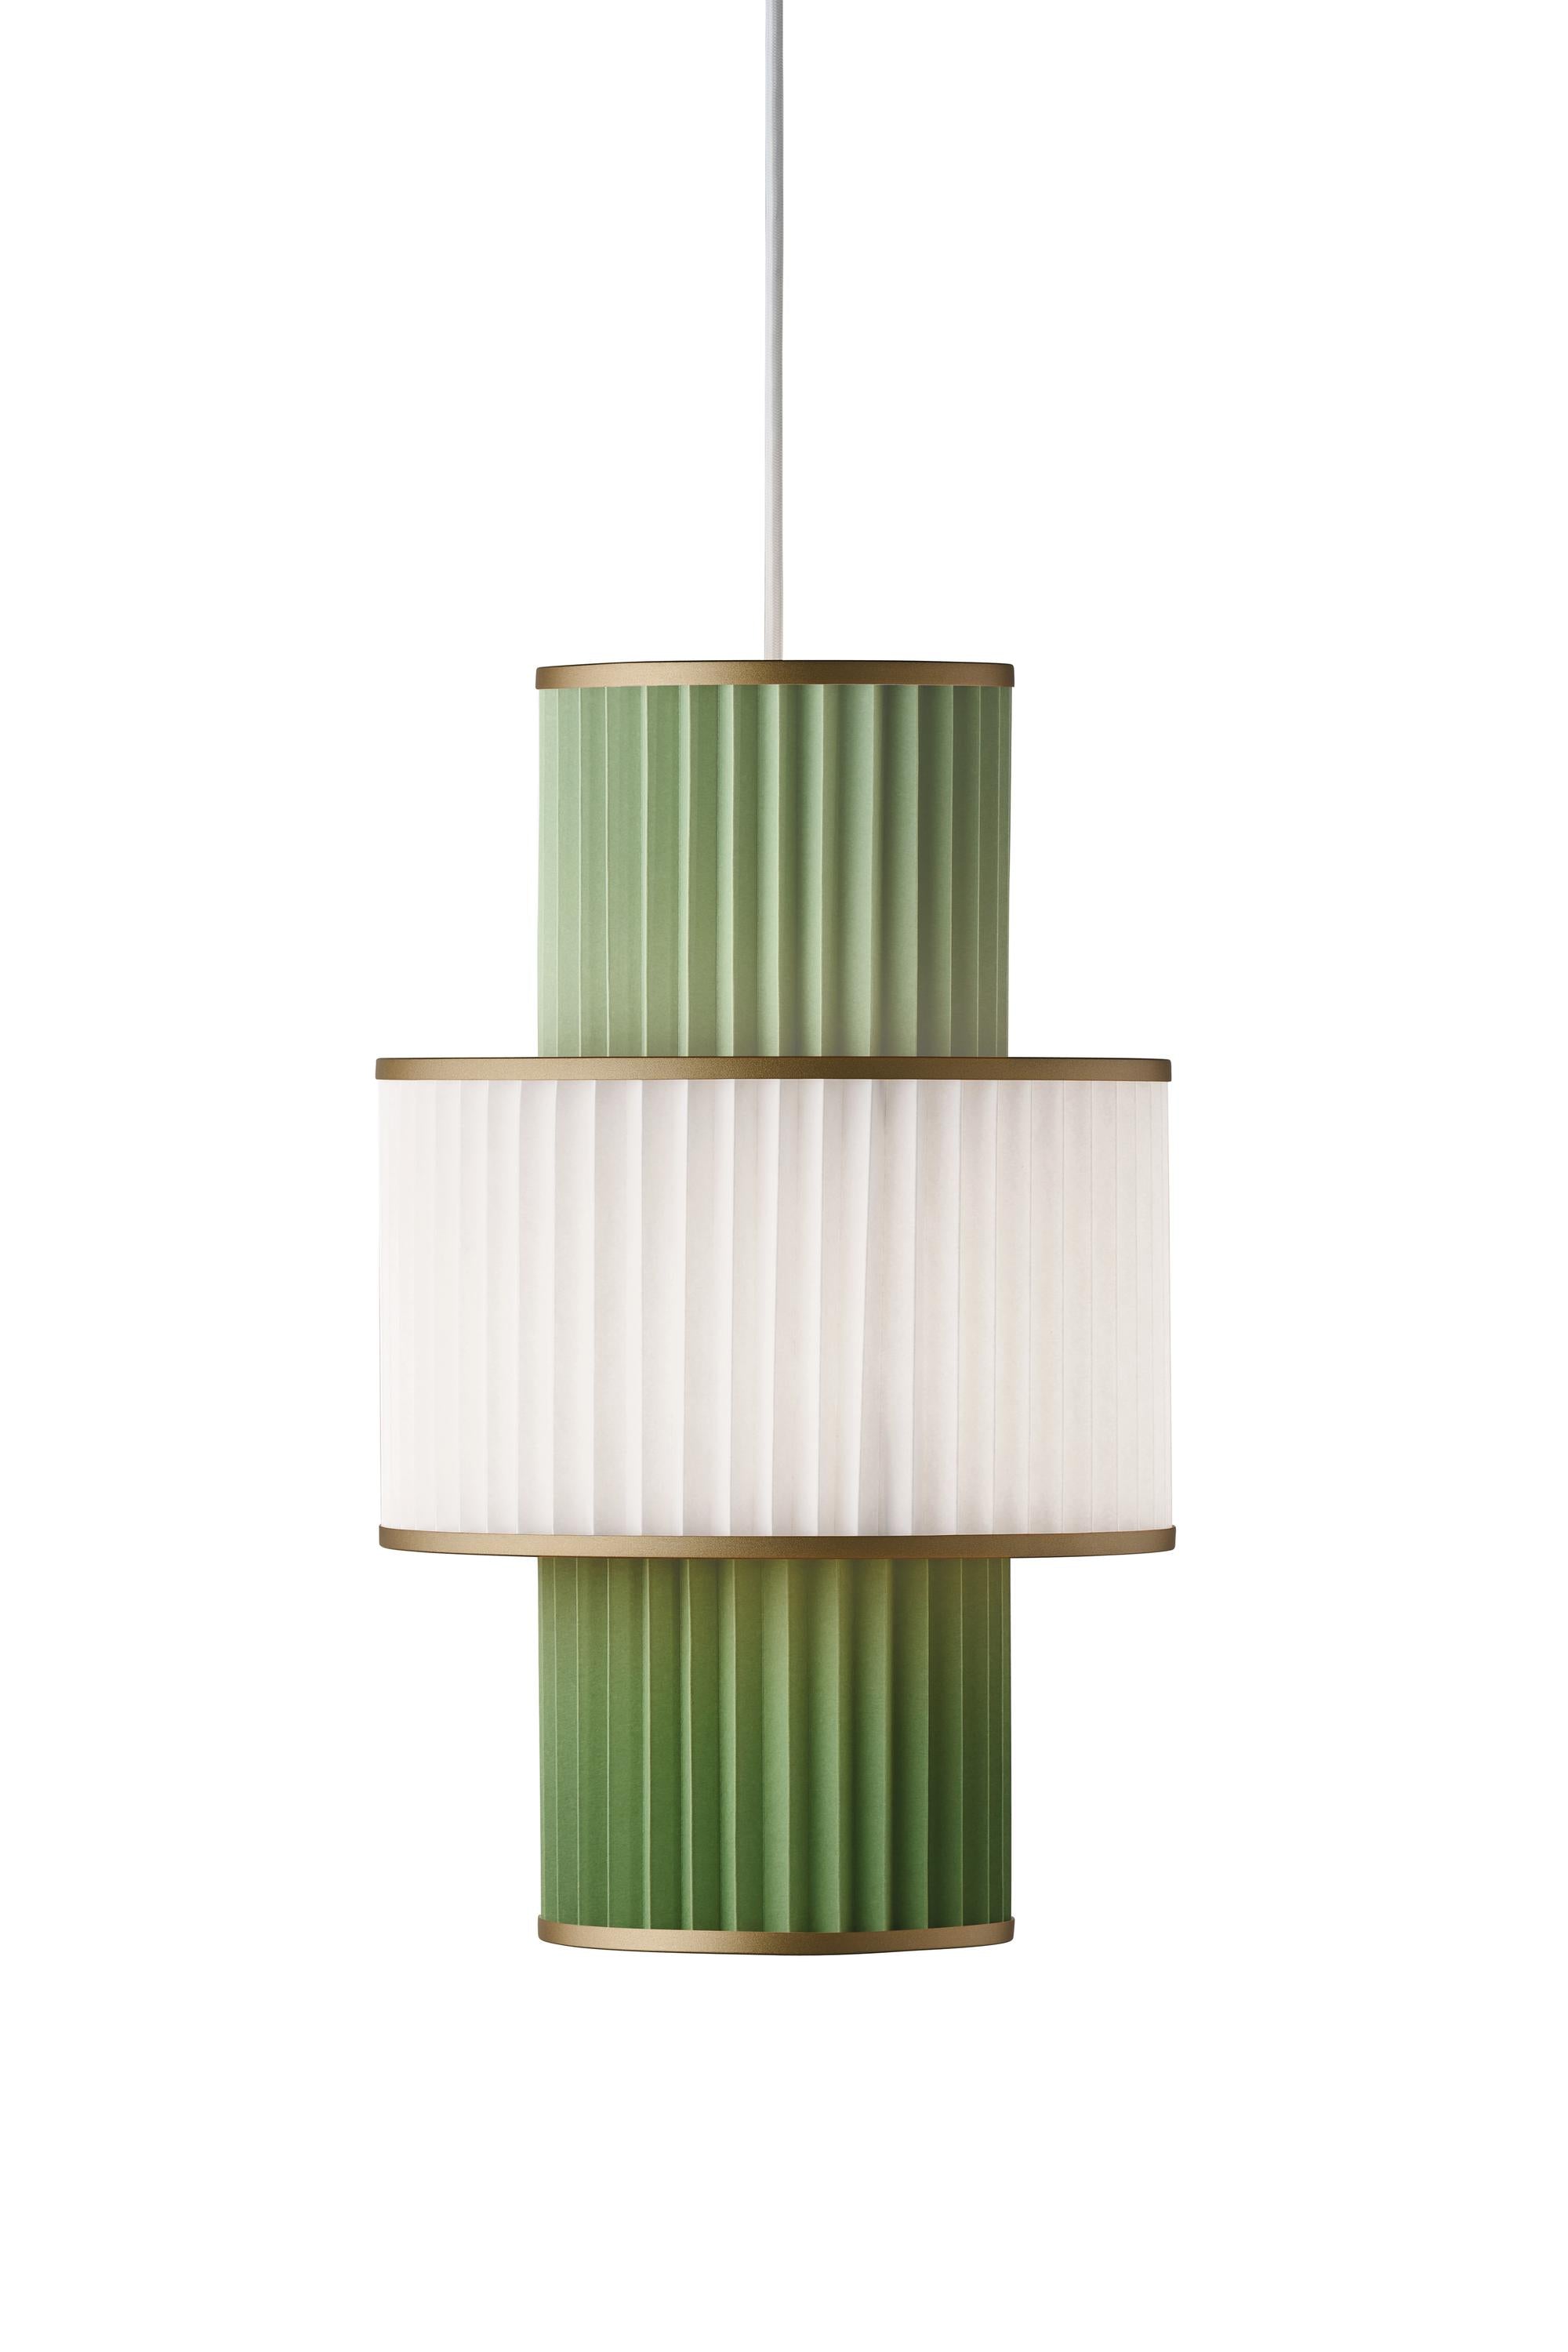 Le Klint Plivello -ophængslamp Gylden/hvid/lysegrøn med 3 nuancer (S M S)